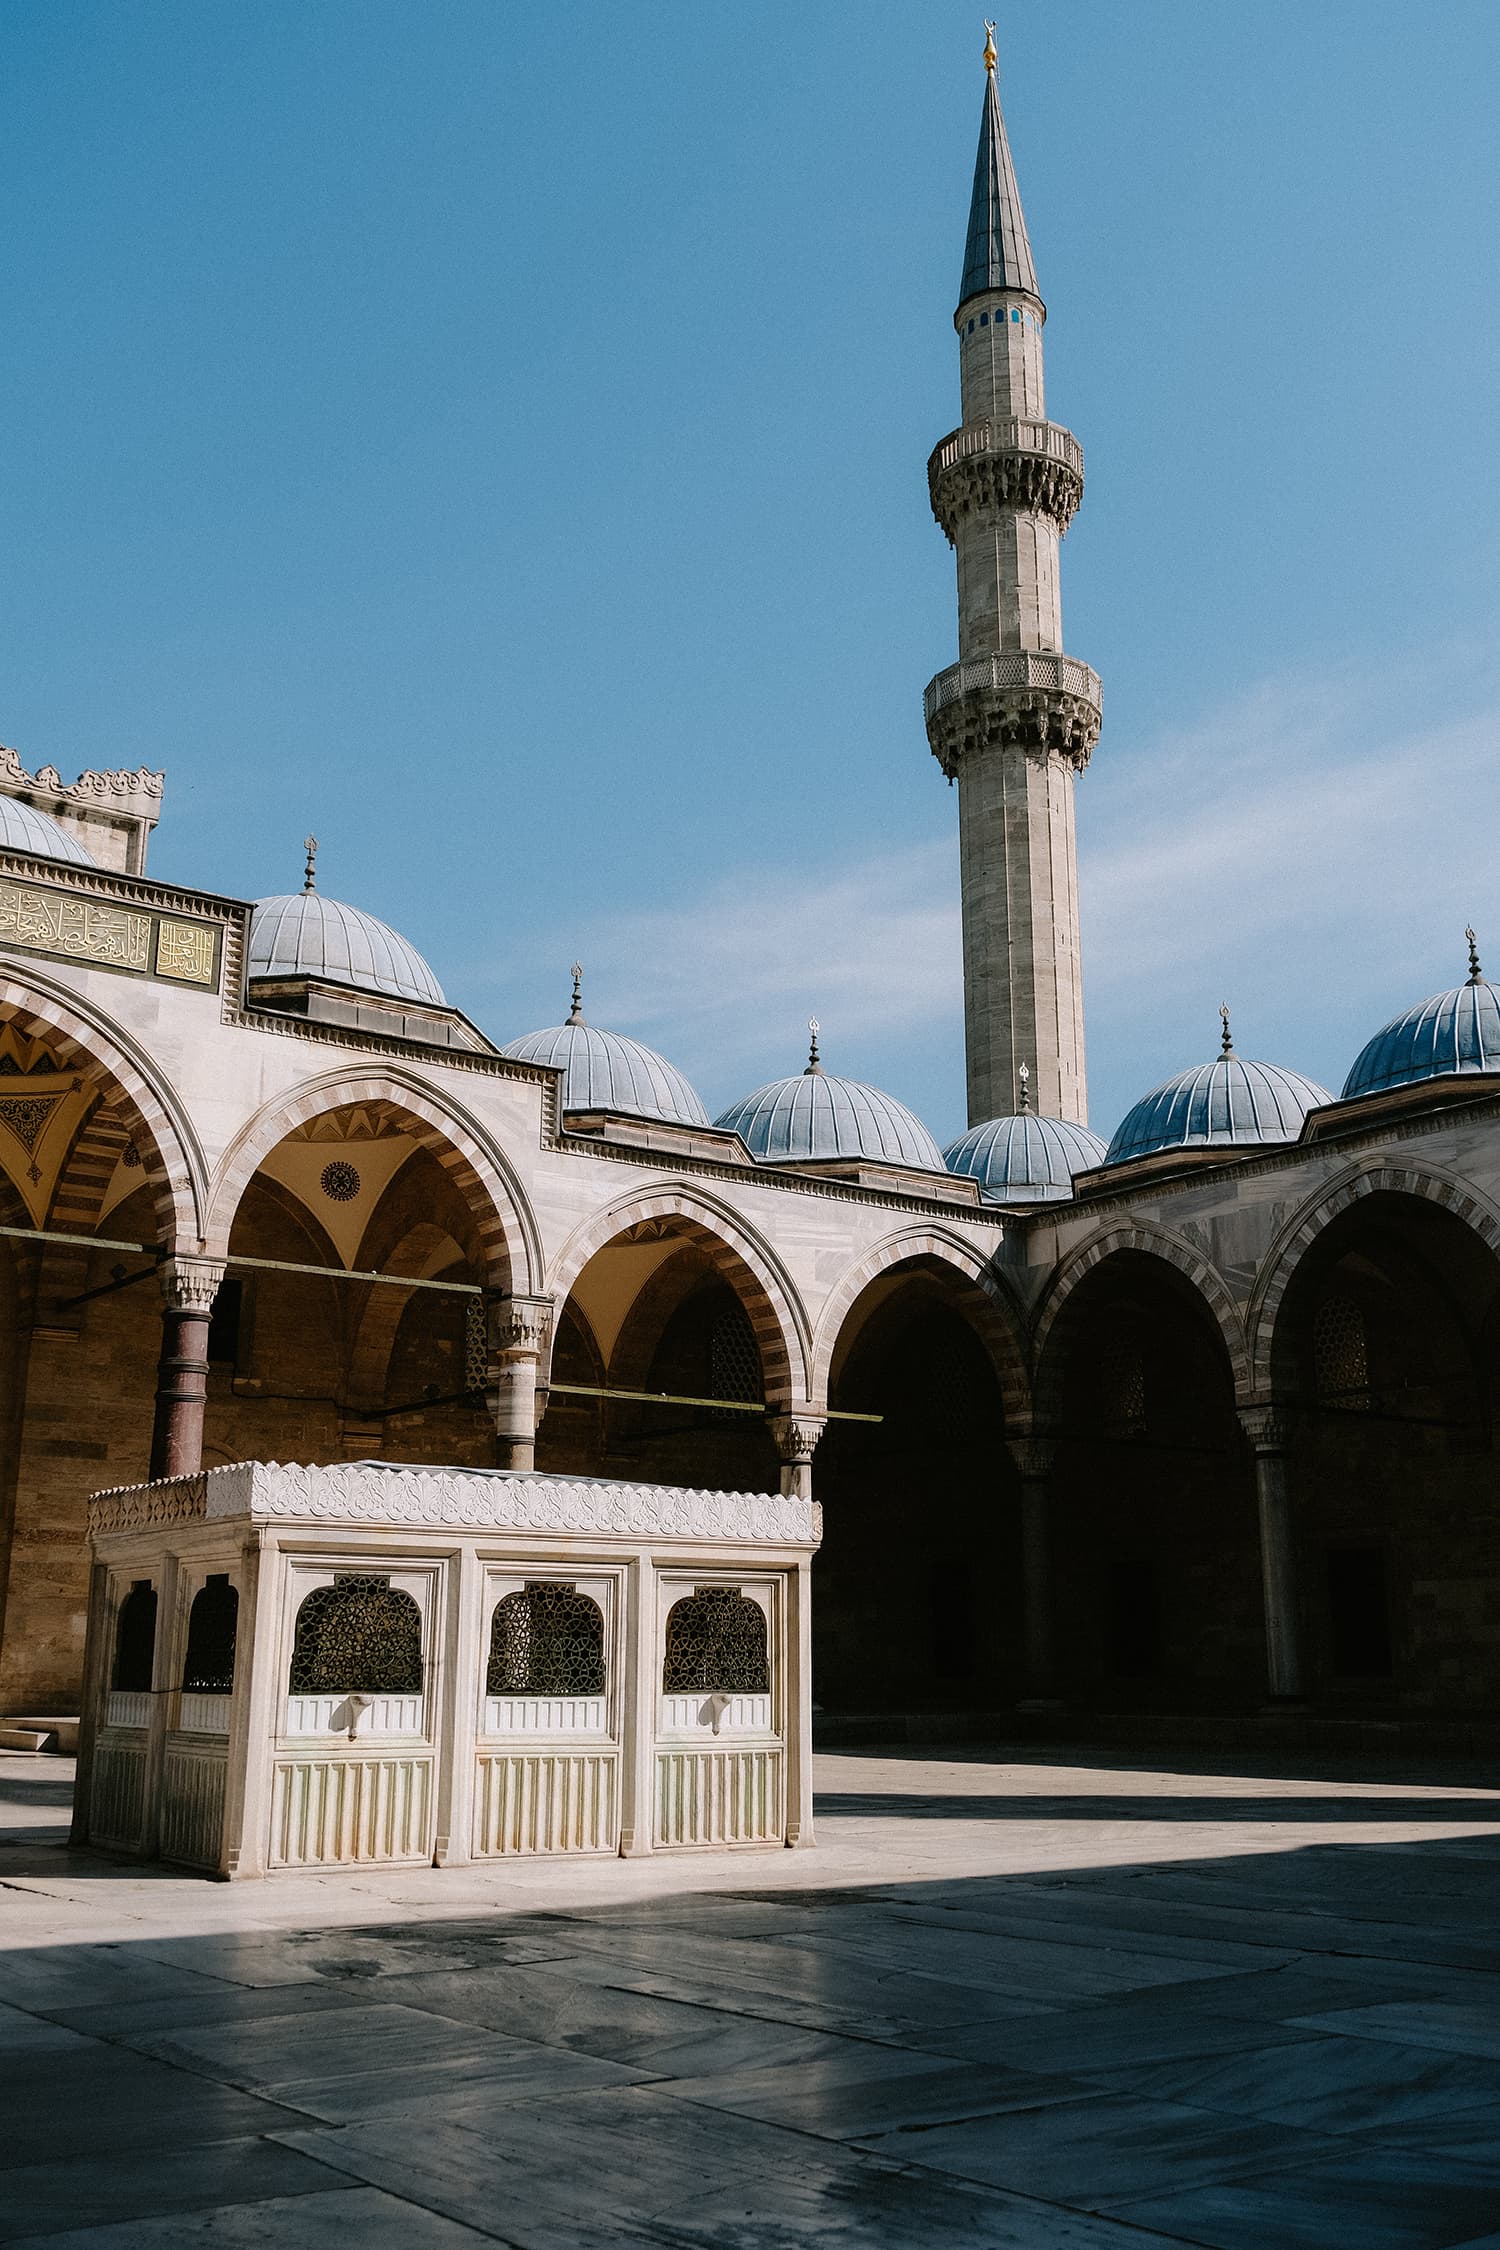 Minaret and Courtyard in Suleymaniye Mosque